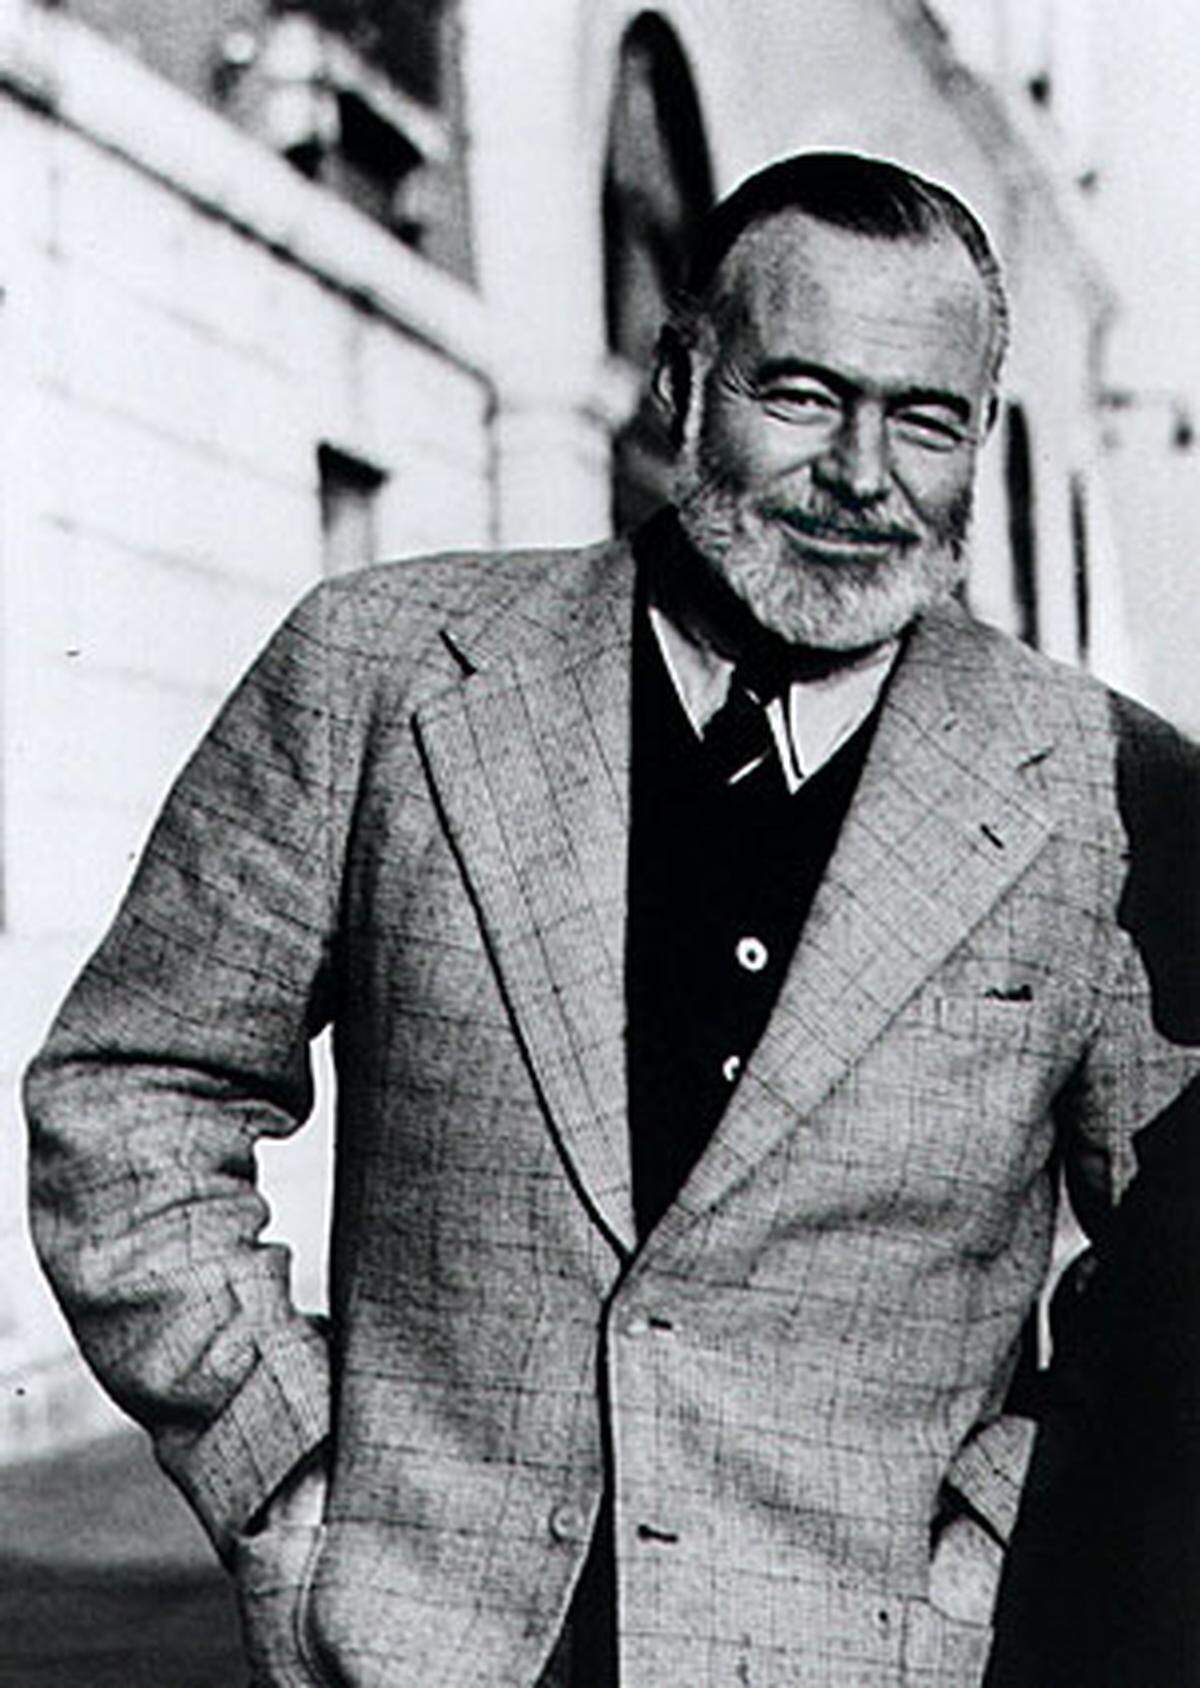 Das Trinken gehörte genauso zu Hemingways Macho-Image wie die Jagd. In der Bar Ritz, die nach ihm benannt wurde, soll er an einem einzigen Abend einmal 52 Martini Cocktails getrunken haben. Zeit seines Lebens begleiteten ihn Alkohol und Depressionen. Gegen Ende seines Lebens hatte er Probleme mit seiner Leber und hohen Blutdruck. Mit 61 Jahren beging der Nobelpreisträger Selbstmord.